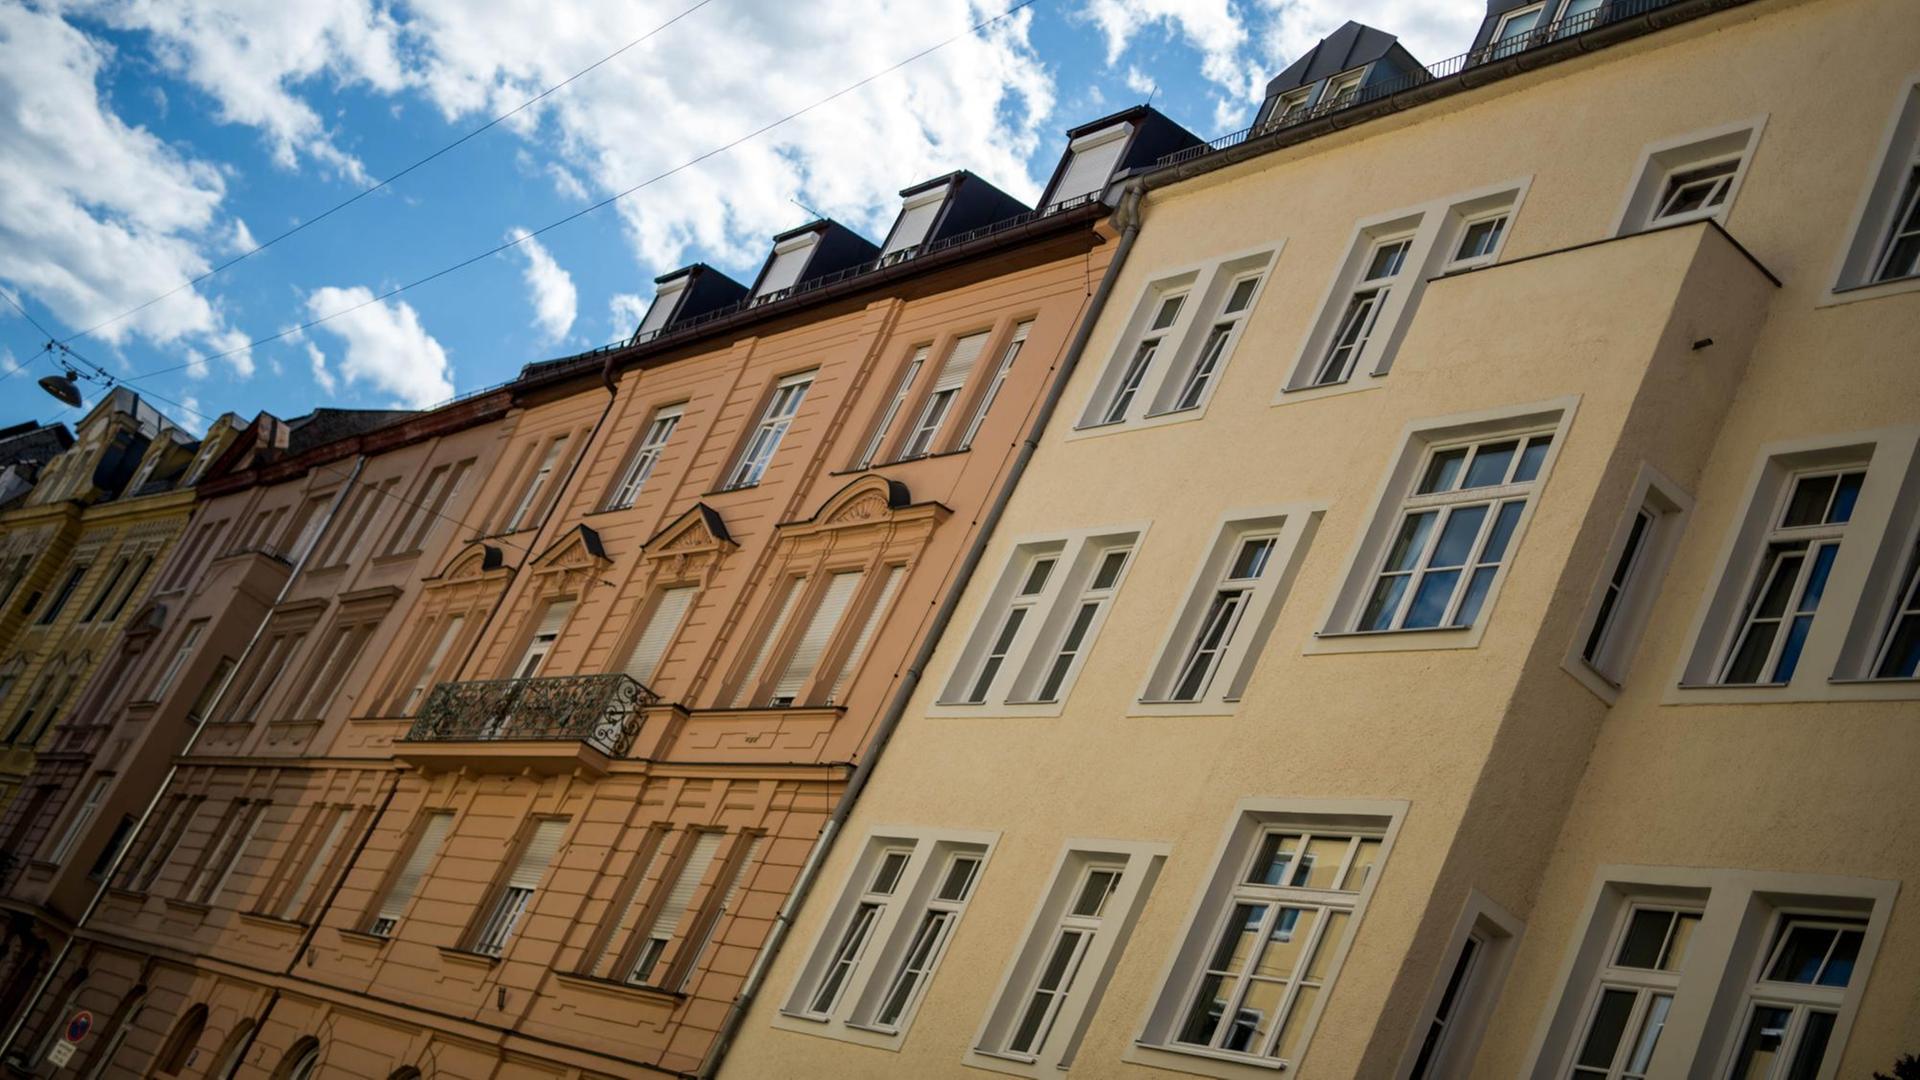 Verschiedenfarbige Wohnhäuser im Stadtteil "Altstadt Lehel" in München vor dem blauen Himmel mit leichten Wolken, aufgenommen 2015